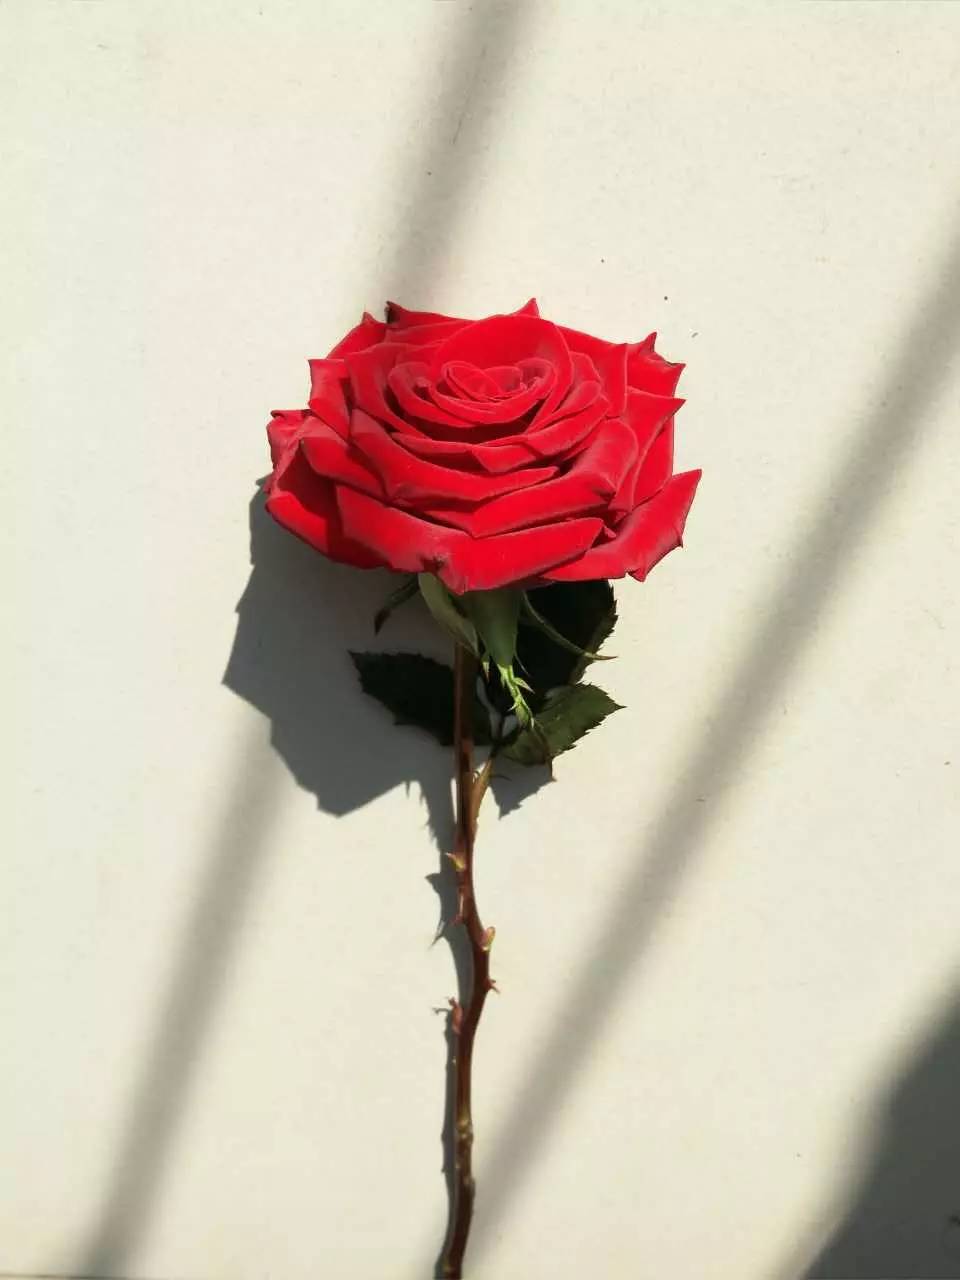 班花:红玫瑰         看到这湛蓝的天空.知道吗?我在想你.